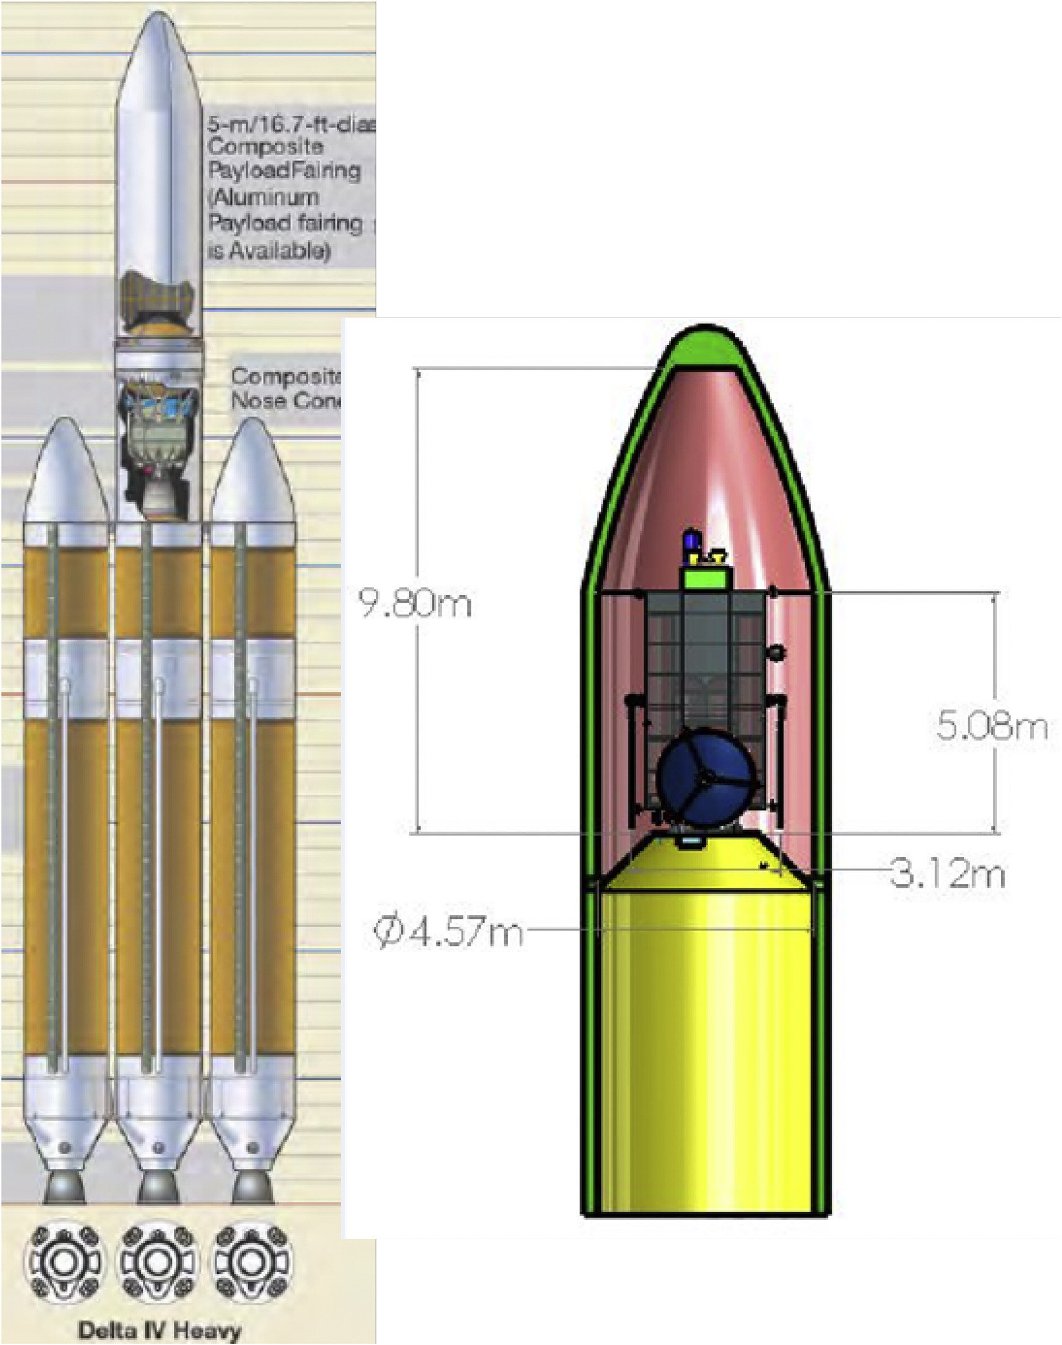 8,8-тонный концептуальный космический аппарат HAMMER (справа) предназначен для установки в рацию Delta IV Heavy, второй в мире старшей ракеты-носителя, превосходящей только ракеты Falcon Heavy от SpaceX.